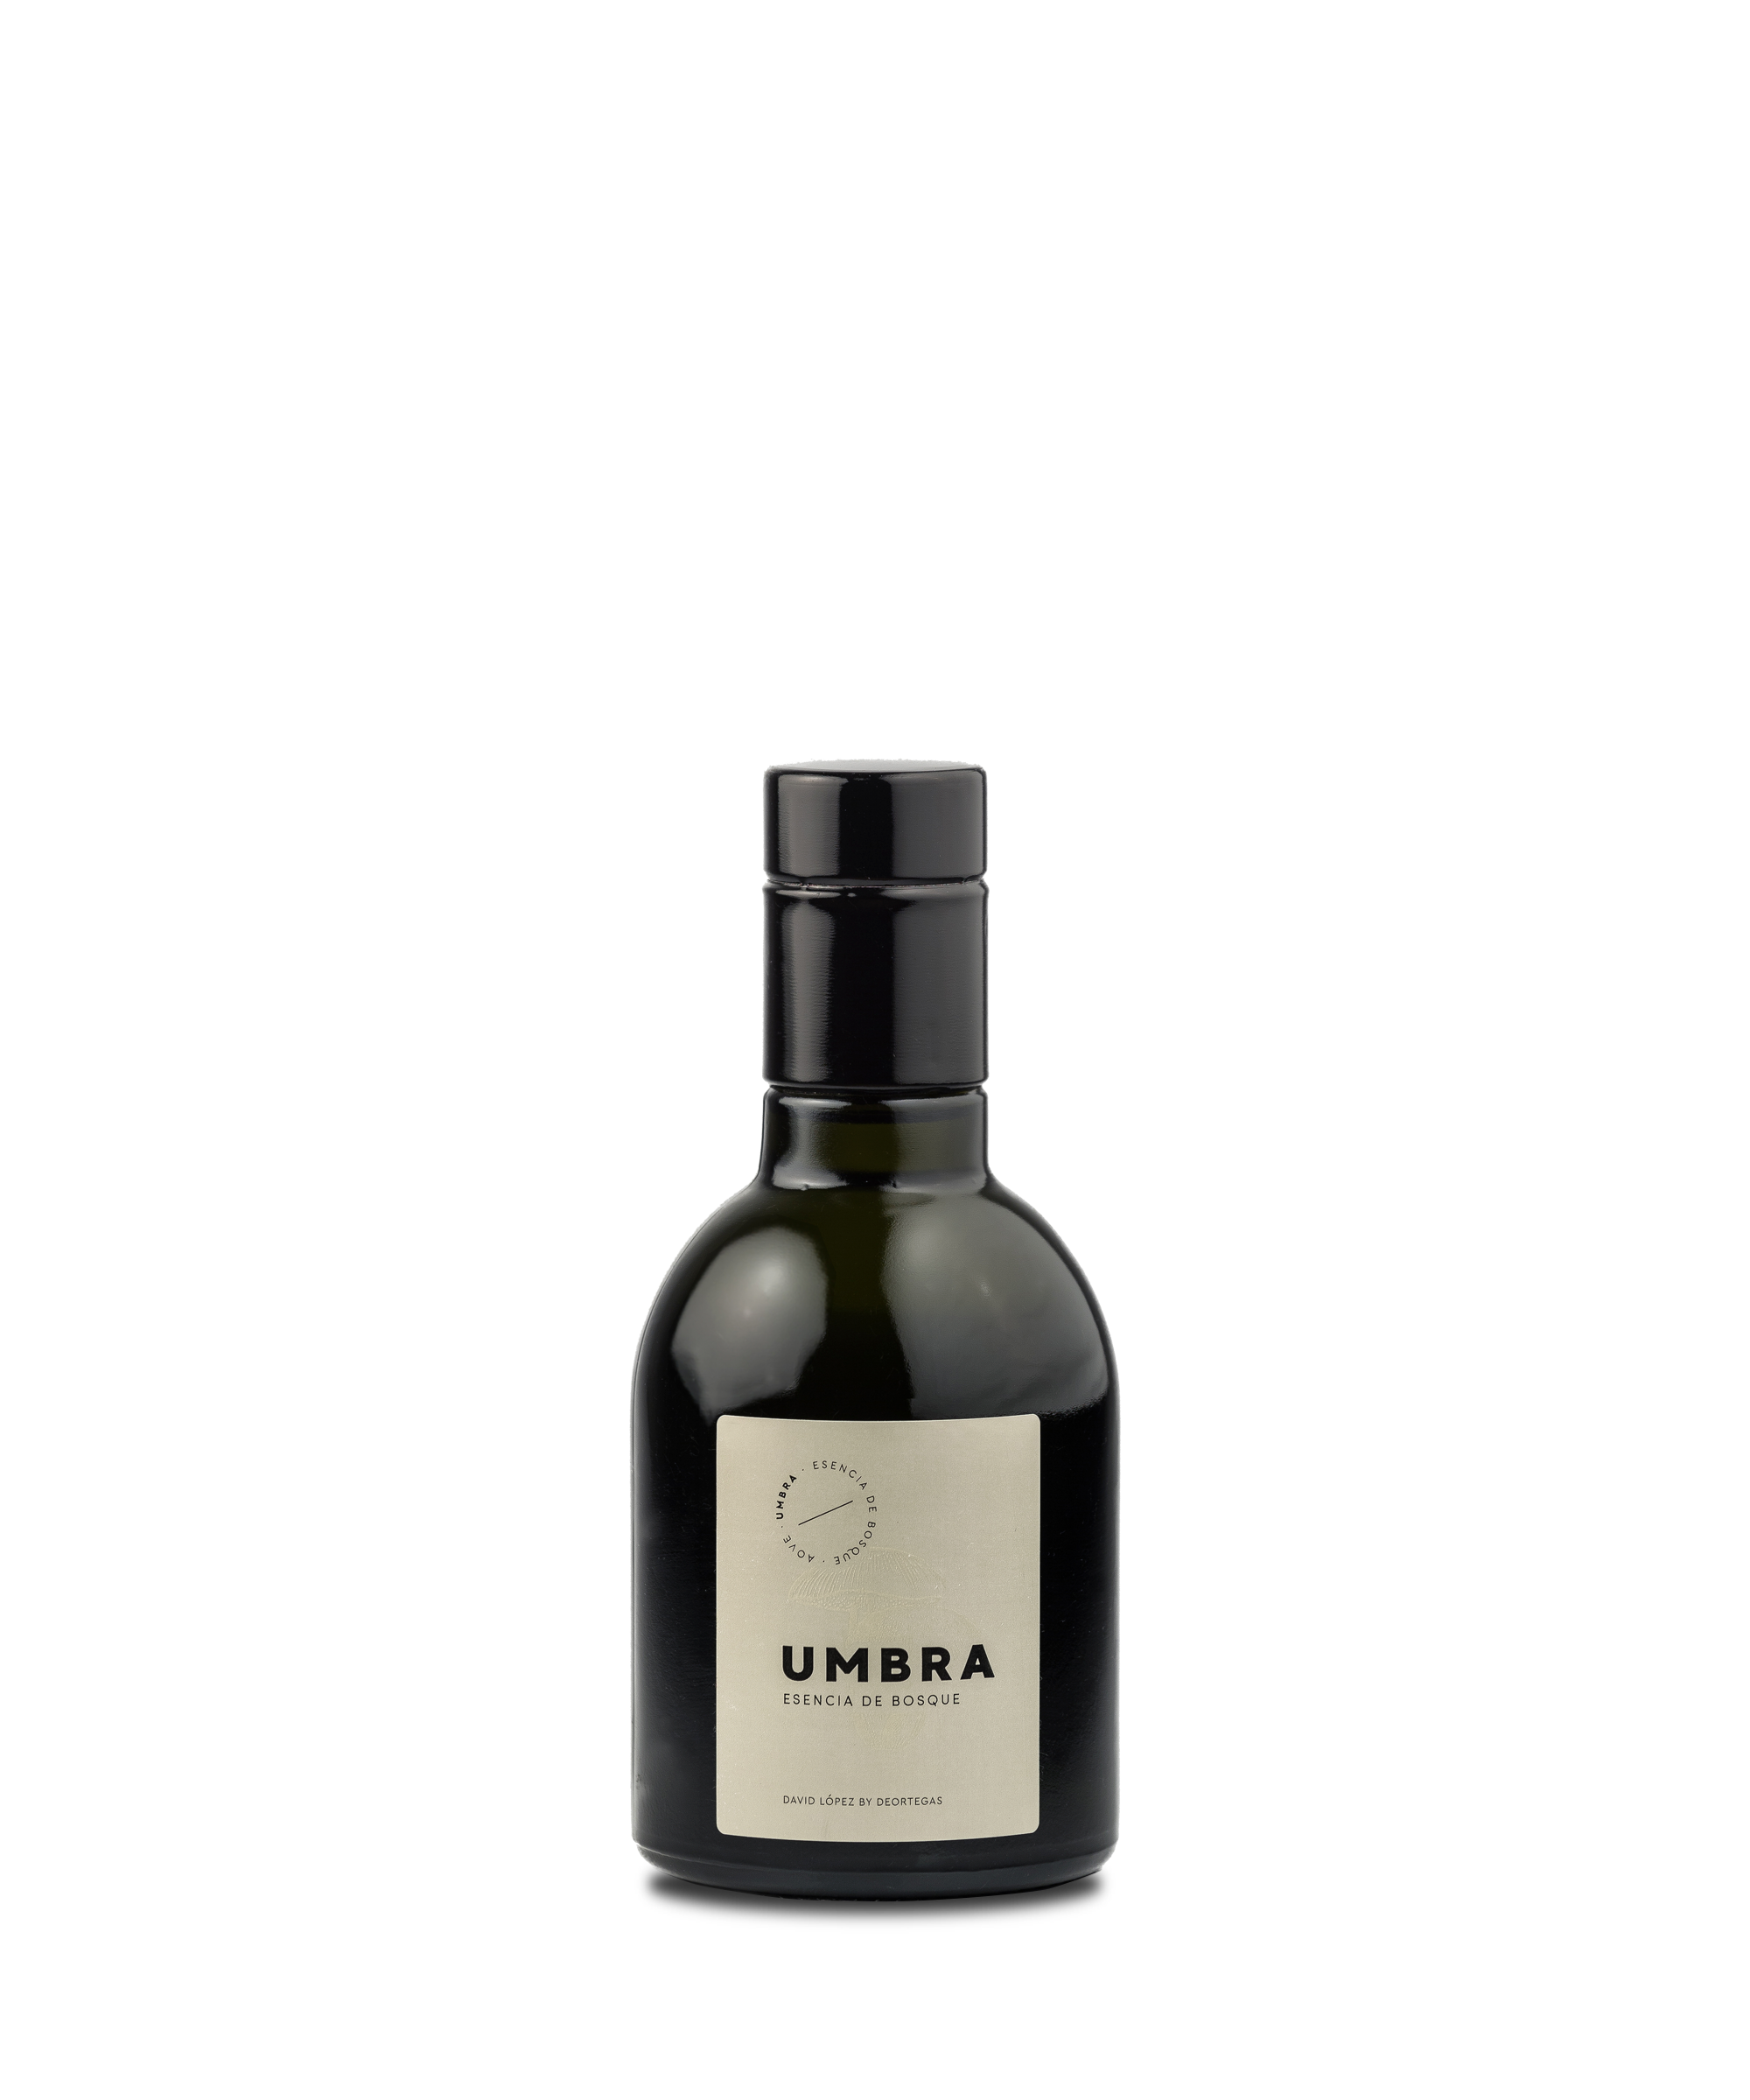 Umbra / Aceite de oliva virgen extra ecológico - Deortegas